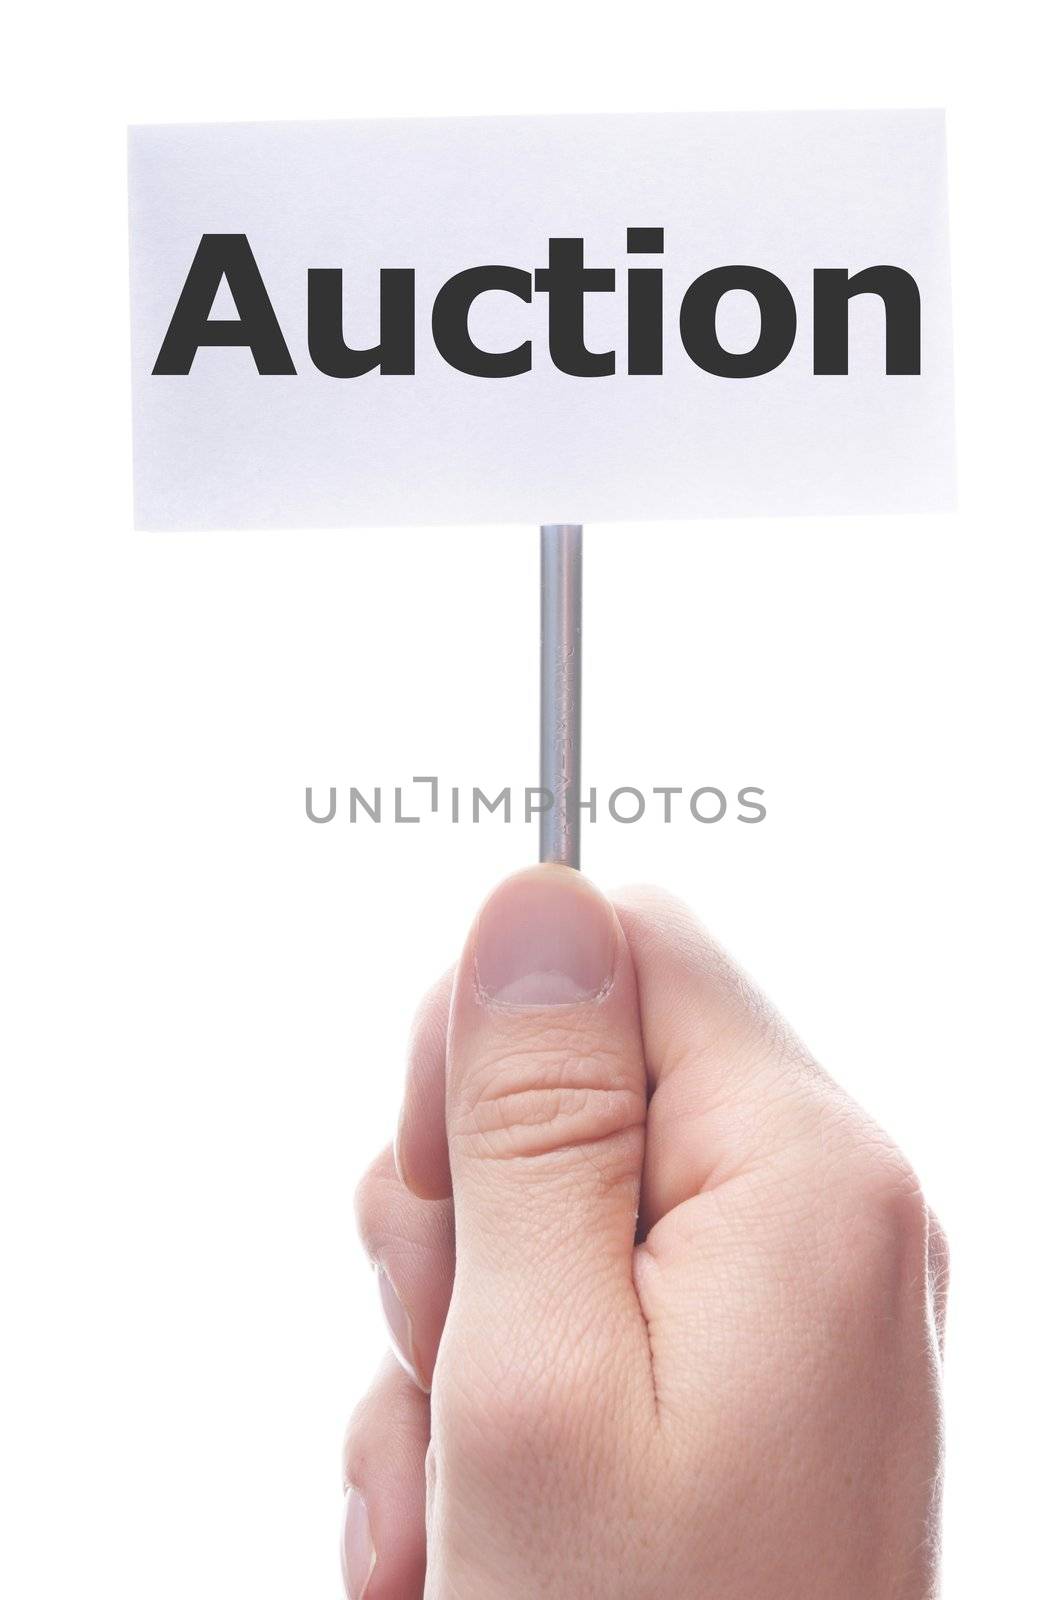 auction by gunnar3000